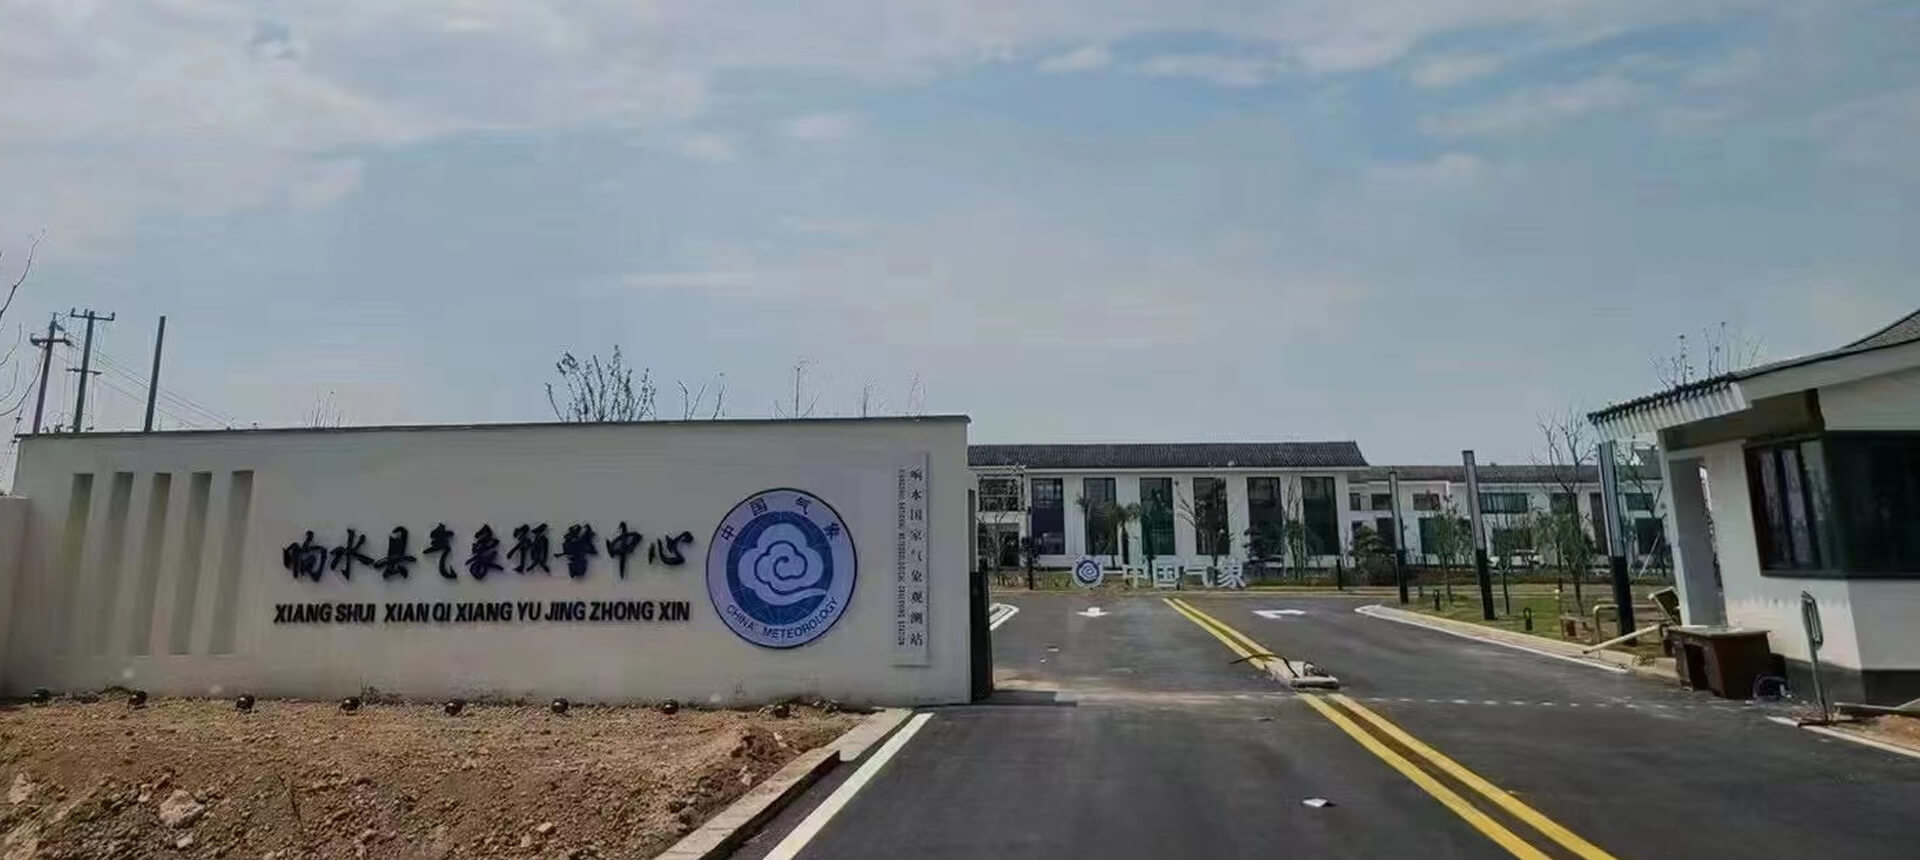 Paperless Conference System para sa China Meteorology sa Jiangsu